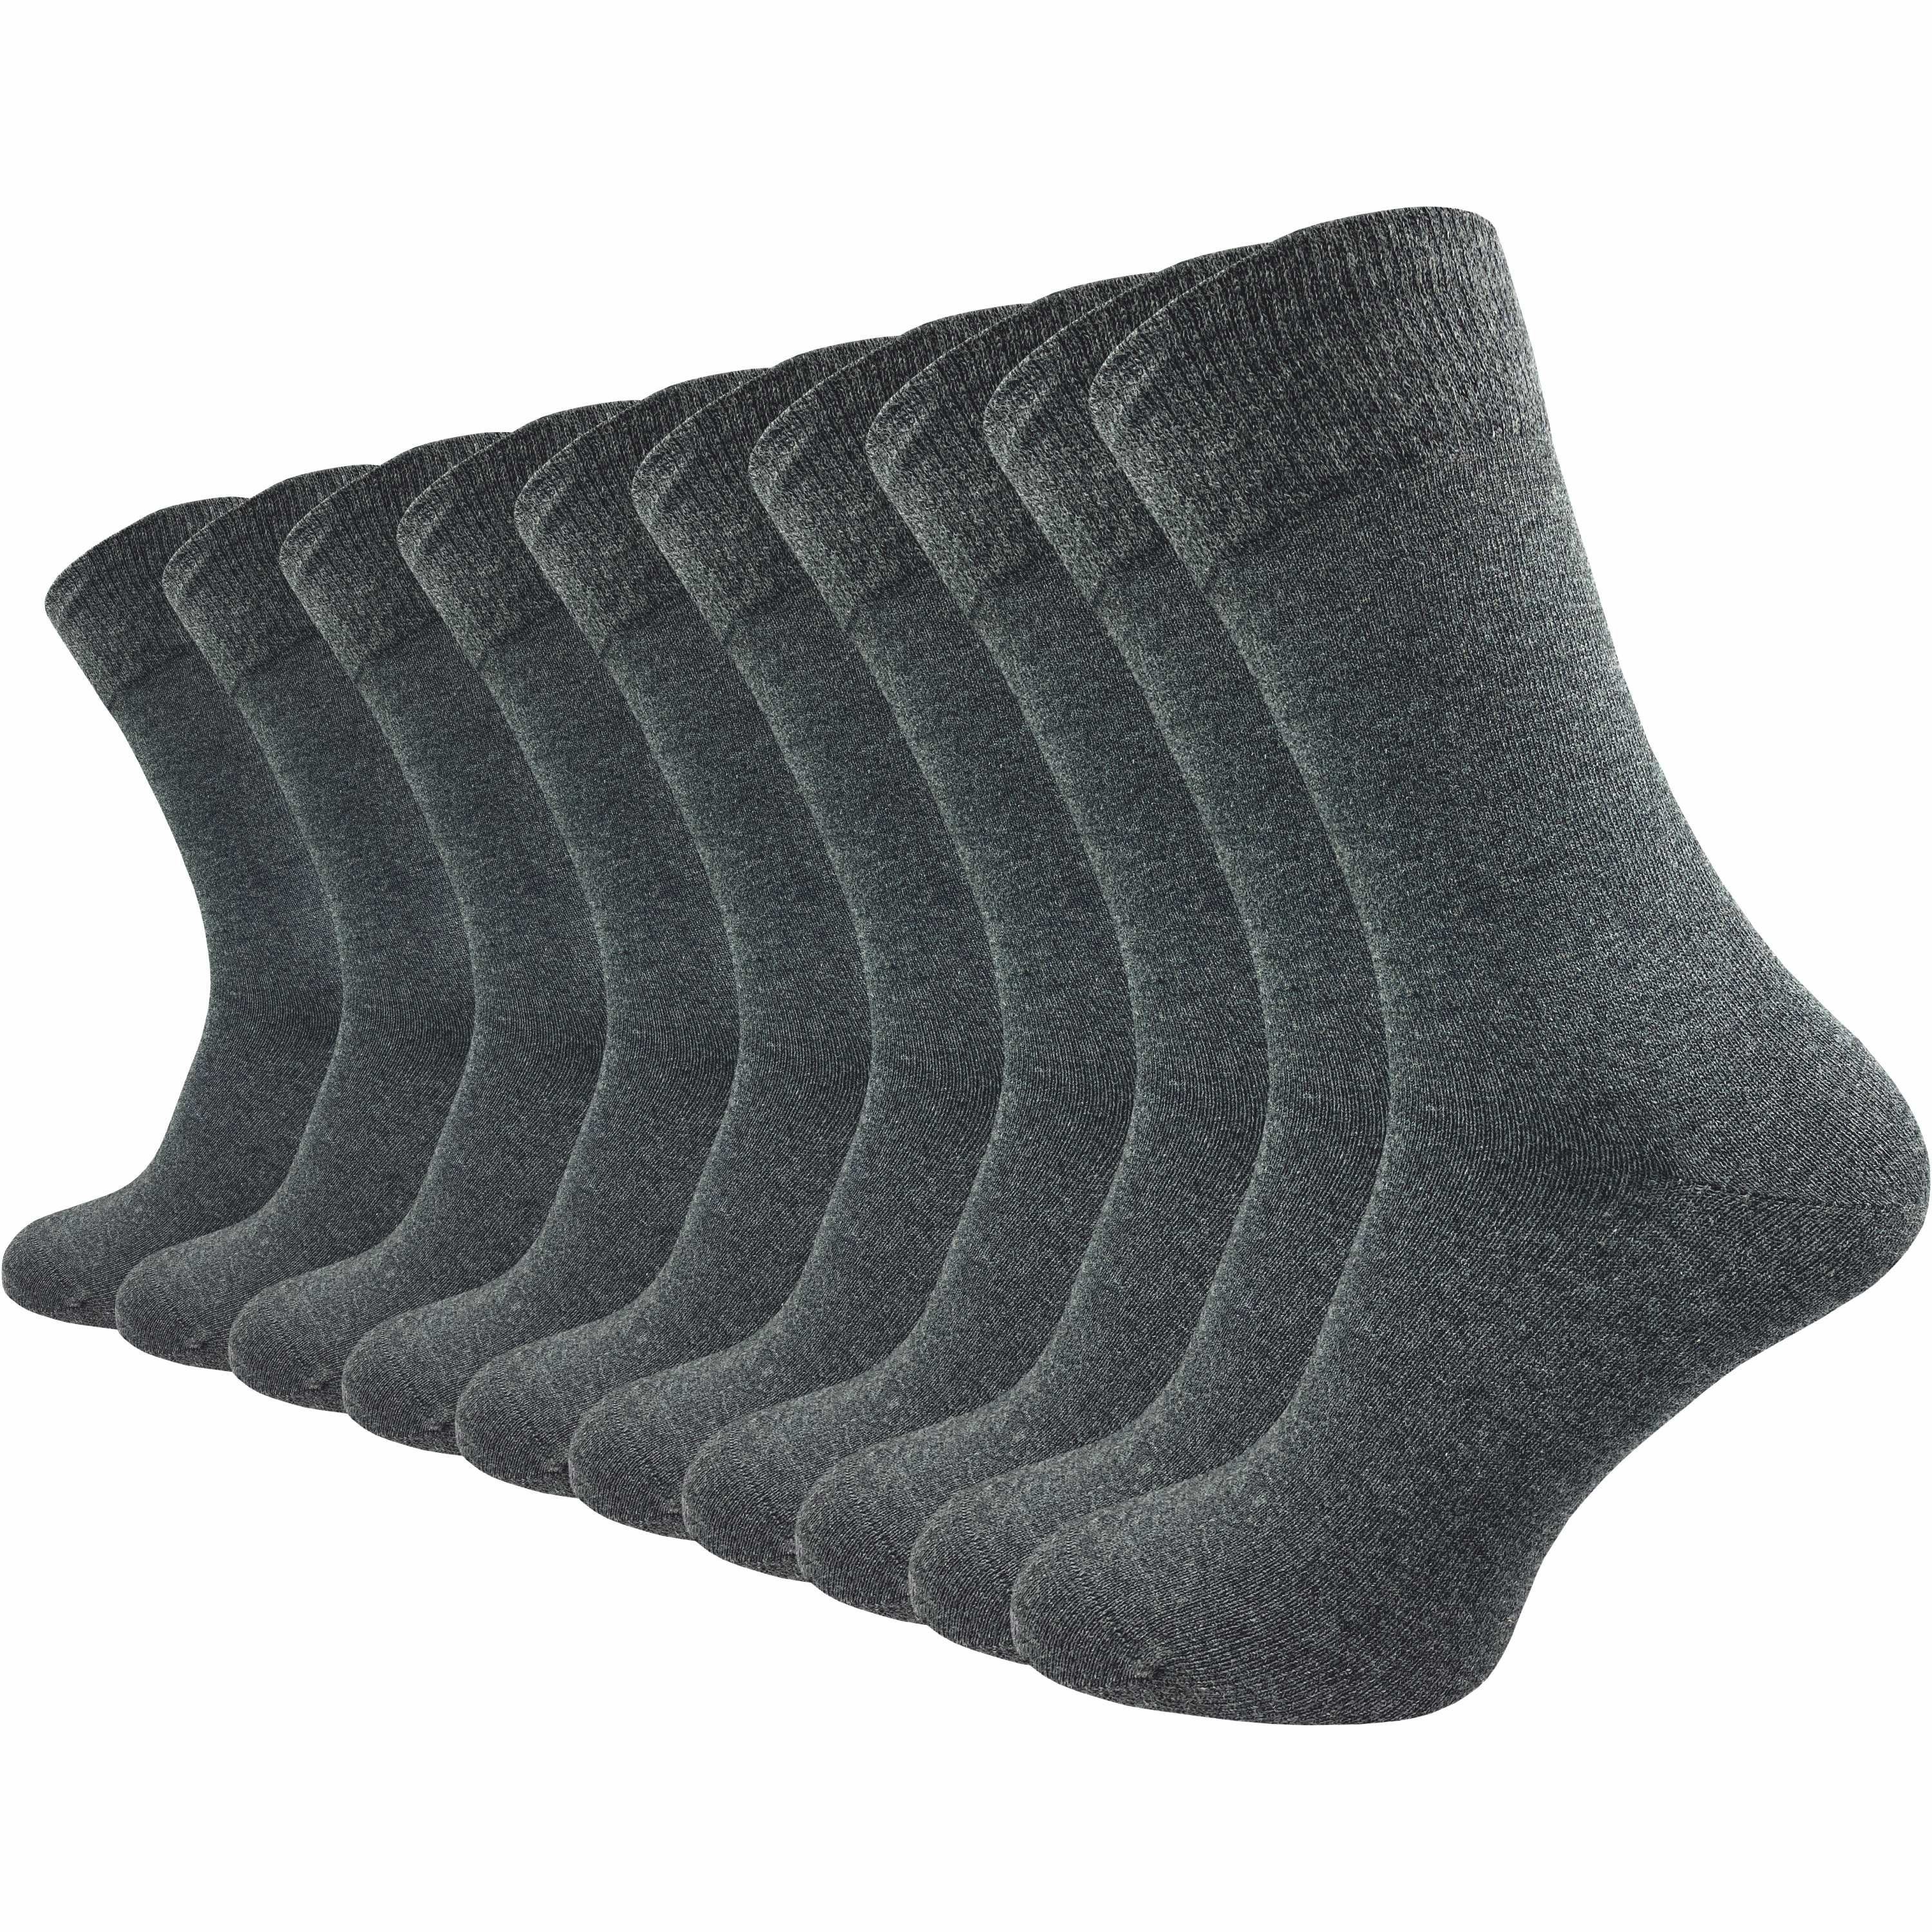 GAWILO Basicsocken für Damen & Herren aus hochwertiger Baumwolle ohne drückende Naht (10 Paar) Socken für den anspruchsvollen Alltag in schwarz, grau, blau und braun anthrazit